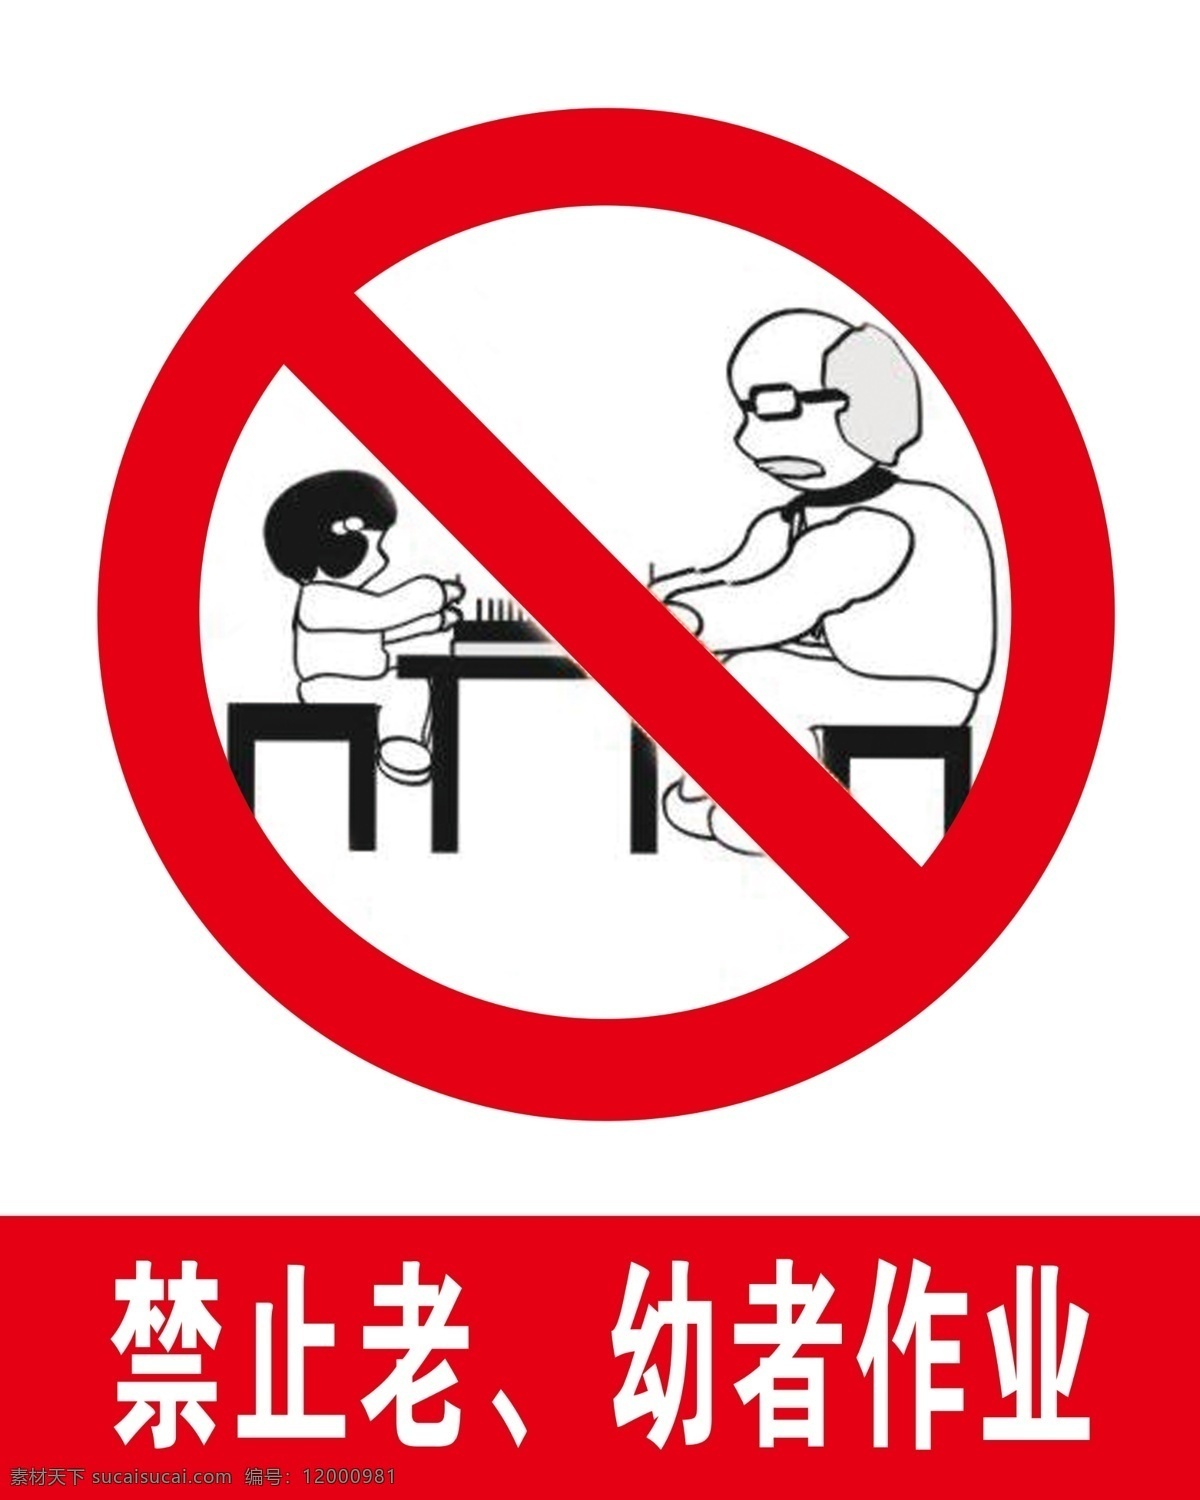 禁止 老幼 作业 禁止老 幼者作业 作业标志 标识 红色禁止标 标志图标 公共标识标志